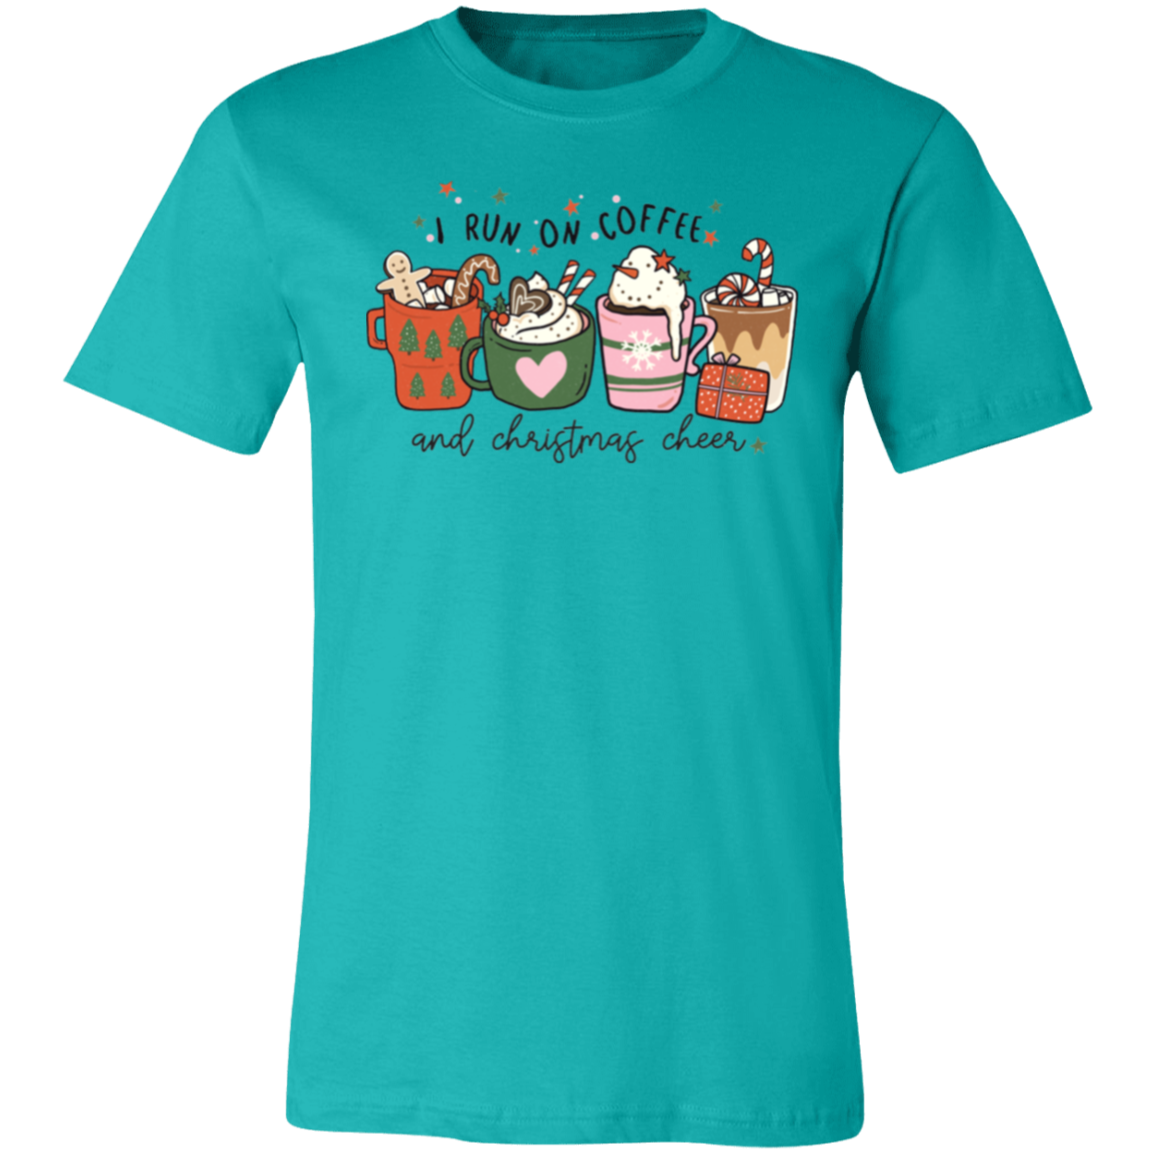 I Run On Coffee & Christmas Cheer Shirt